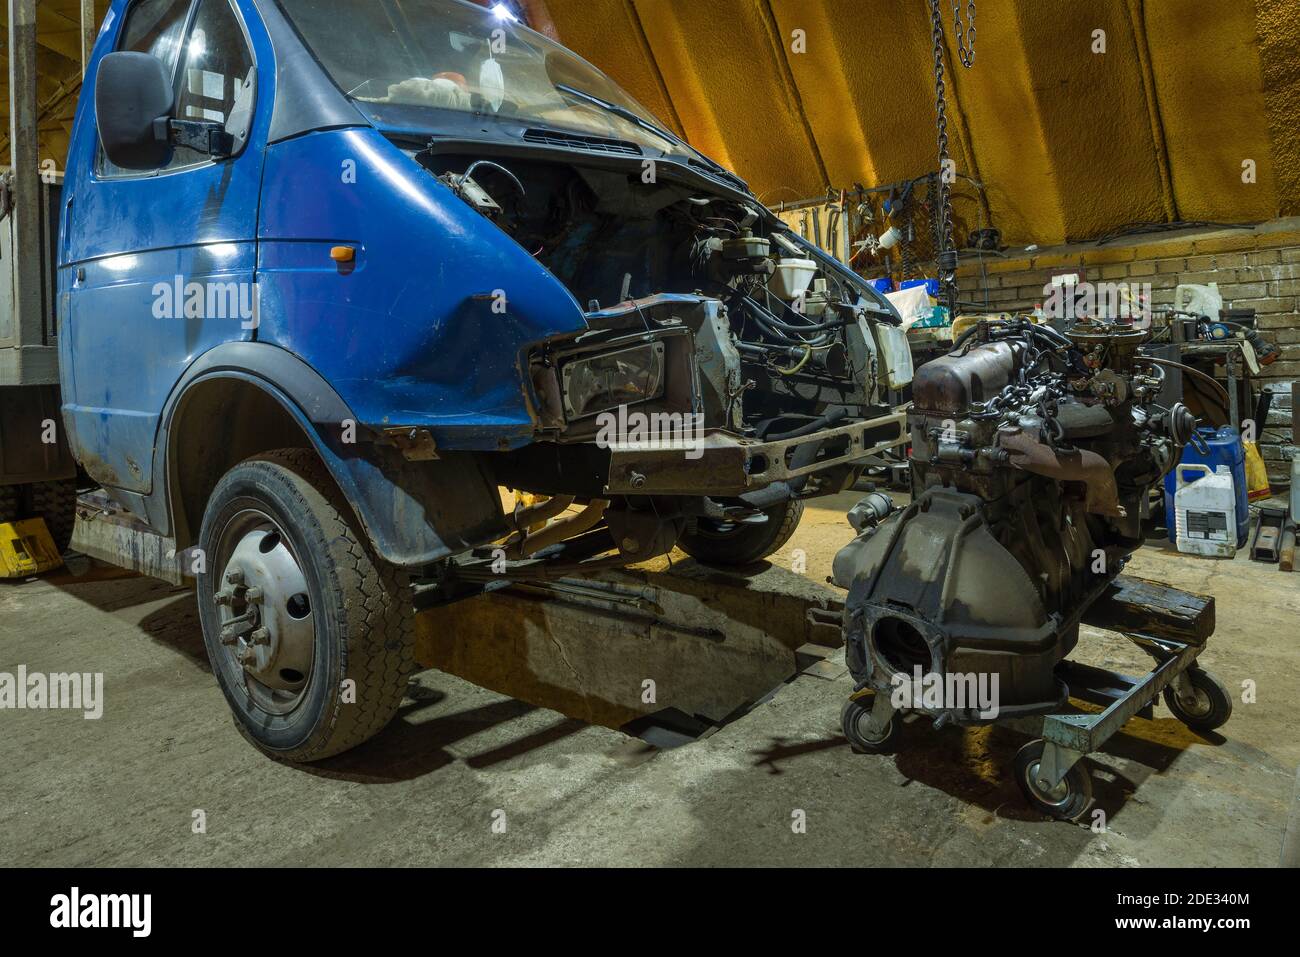 SANKT PETERSBURG, RUSSLAND - 12. AUGUST 2020: Demontierter Motor und zerstörte leichten LKW 'Gazelle' GAZ-3302 in einem Autodienst Stockfoto